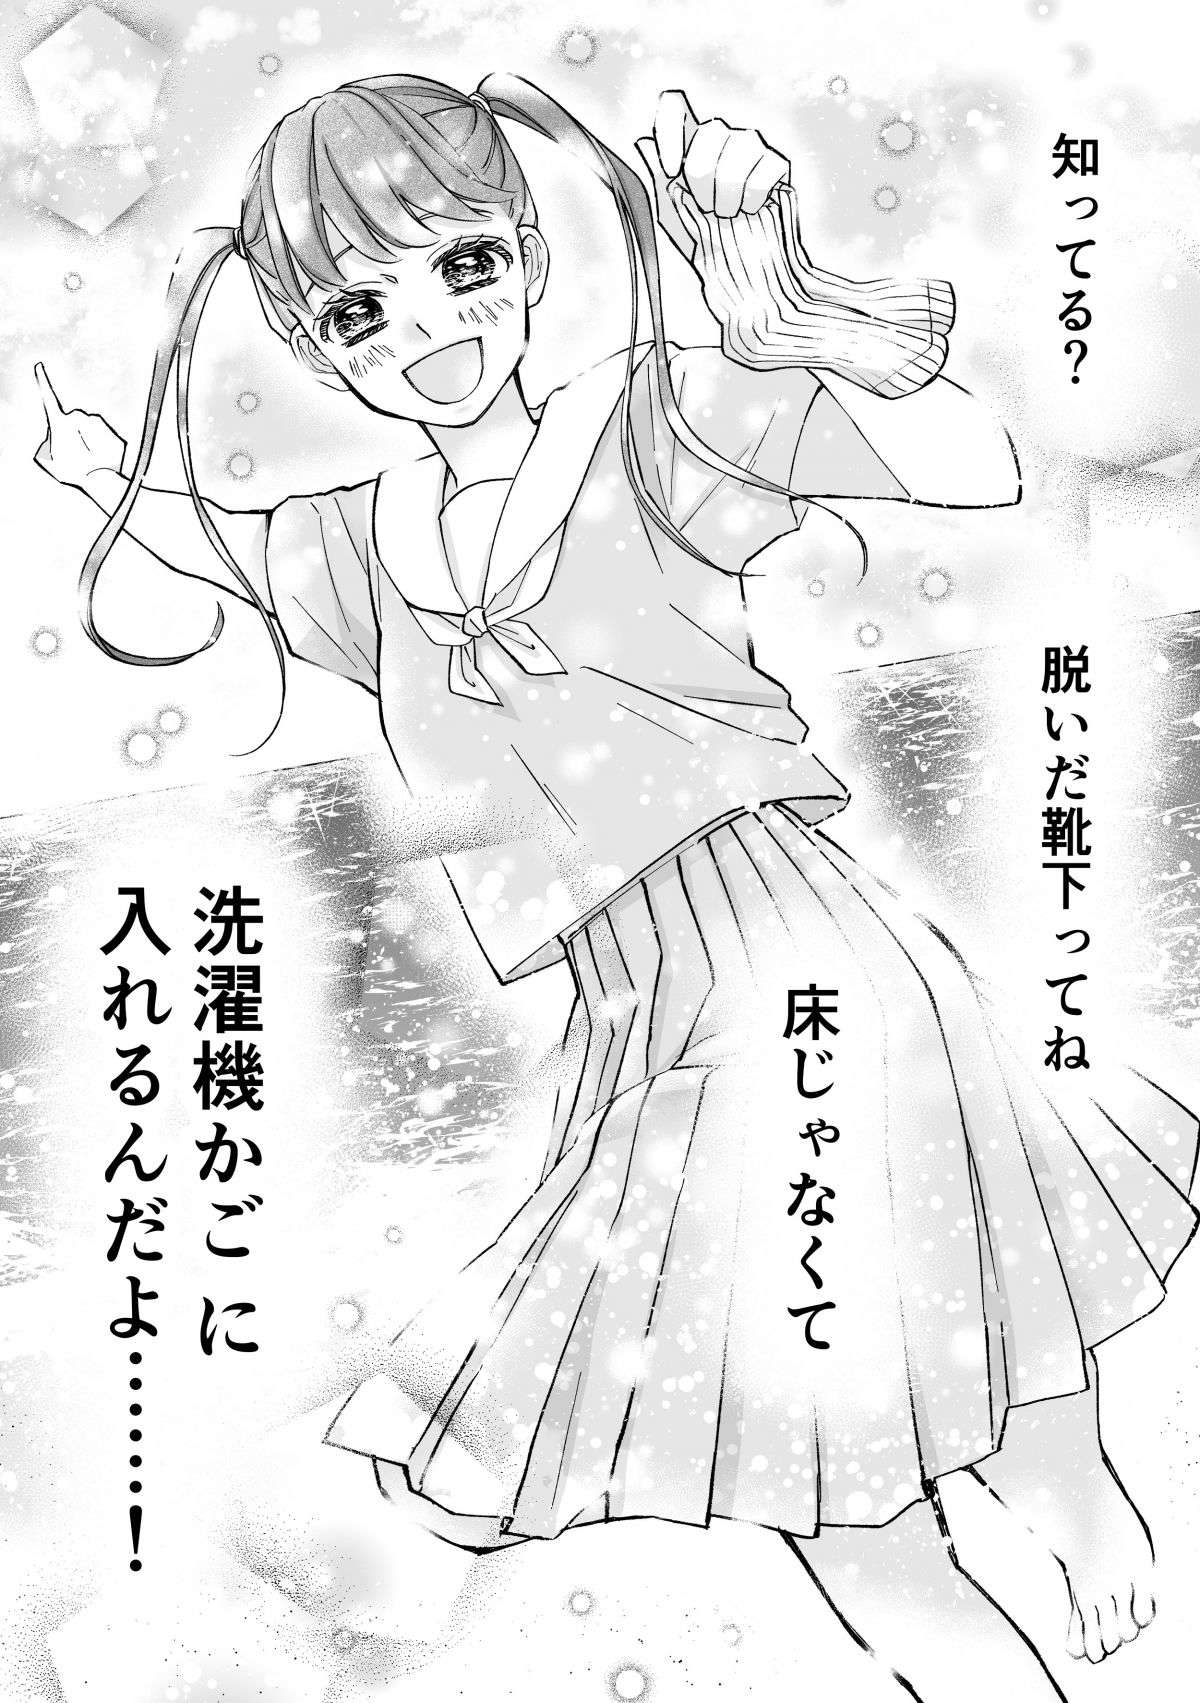 『少女漫画ぽく愚痴る。』 24.jpg